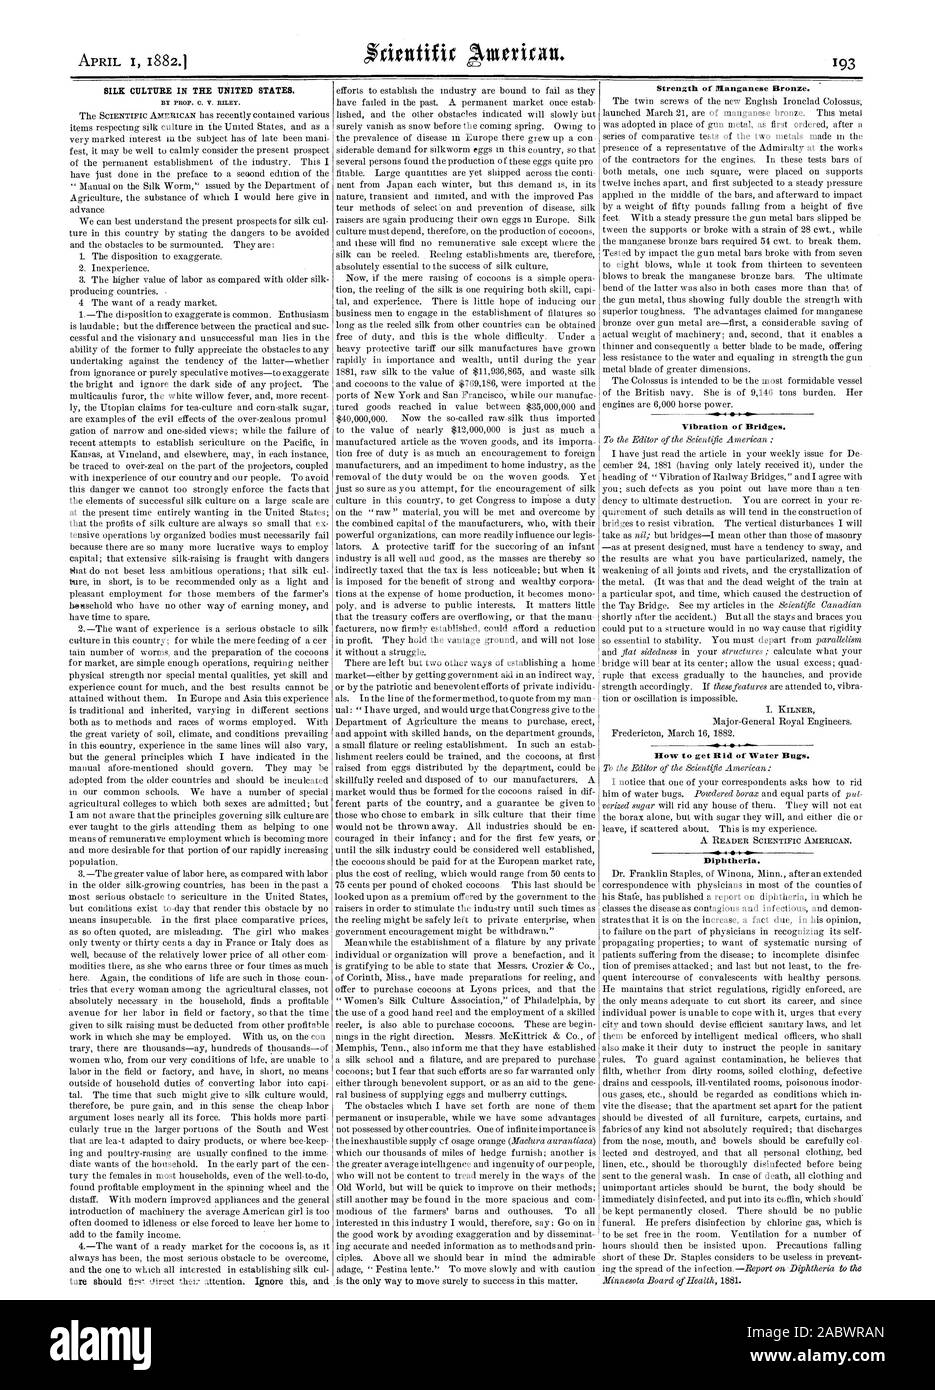 El cultivo de la SEDA EN LOS ESTADOS UNIDOS. Por PROF. C. V. Riley. Fuerza de bronce de manganeso. Vibración de puentes. Difteria., Scientific American, 1882-04-01 Foto de stock